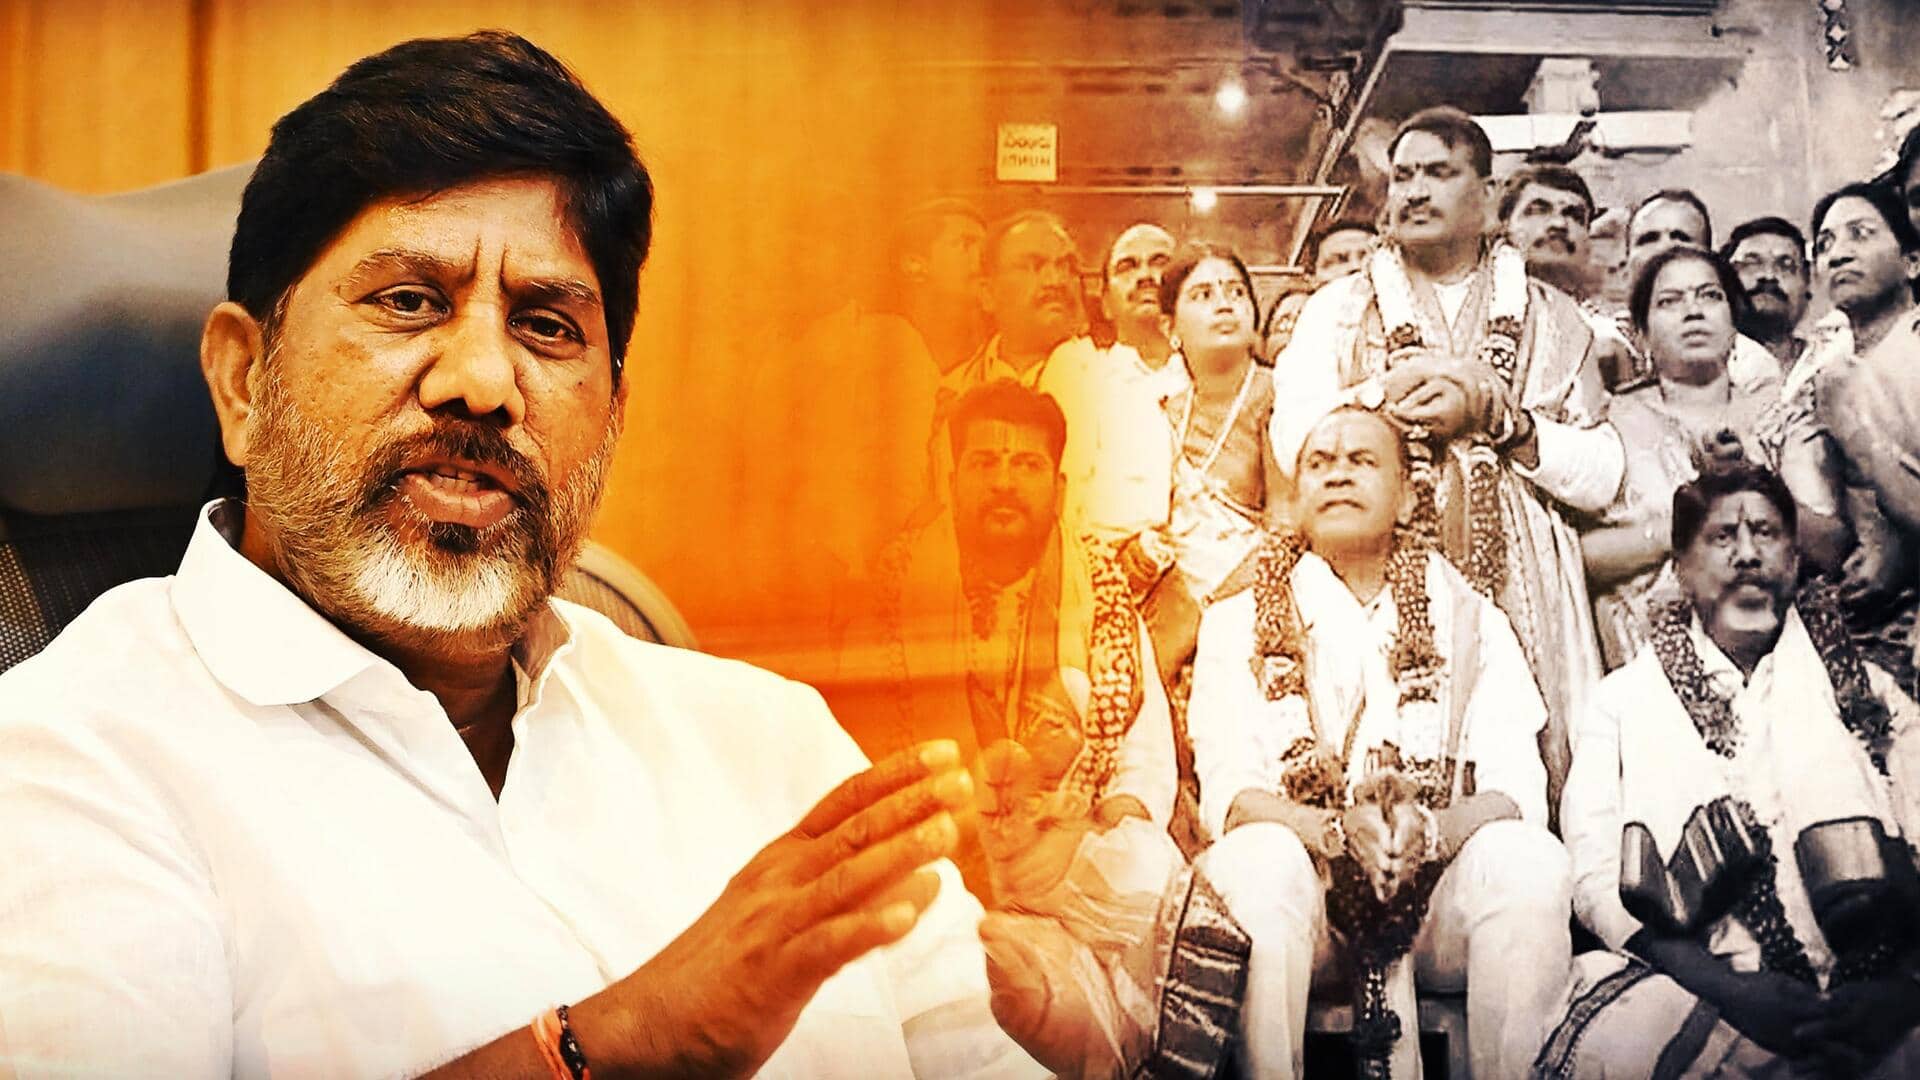 Telangana CM slammed for making Dalit deputy sit on floor